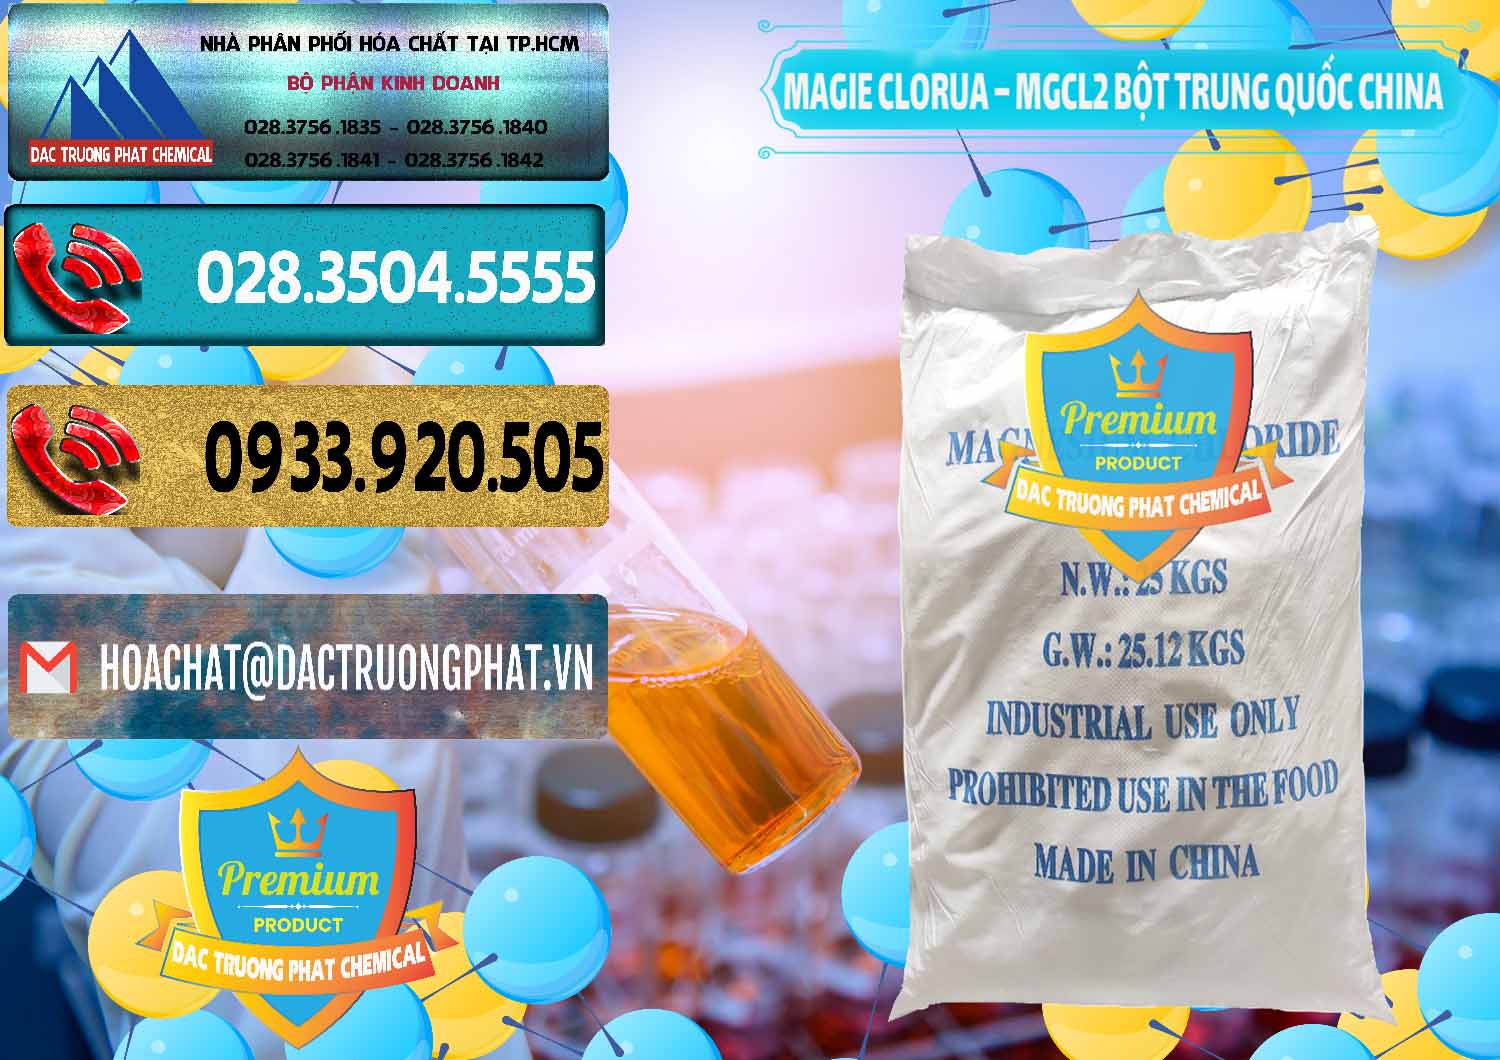 Đơn vị chuyên bán và phân phối Magie Clorua – MGCL2 96% Dạng Bột Bao Chữ Xanh Trung Quốc China - 0207 - Cty chuyên cung cấp - kinh doanh hóa chất tại TP.HCM - hoachatdetnhuom.com